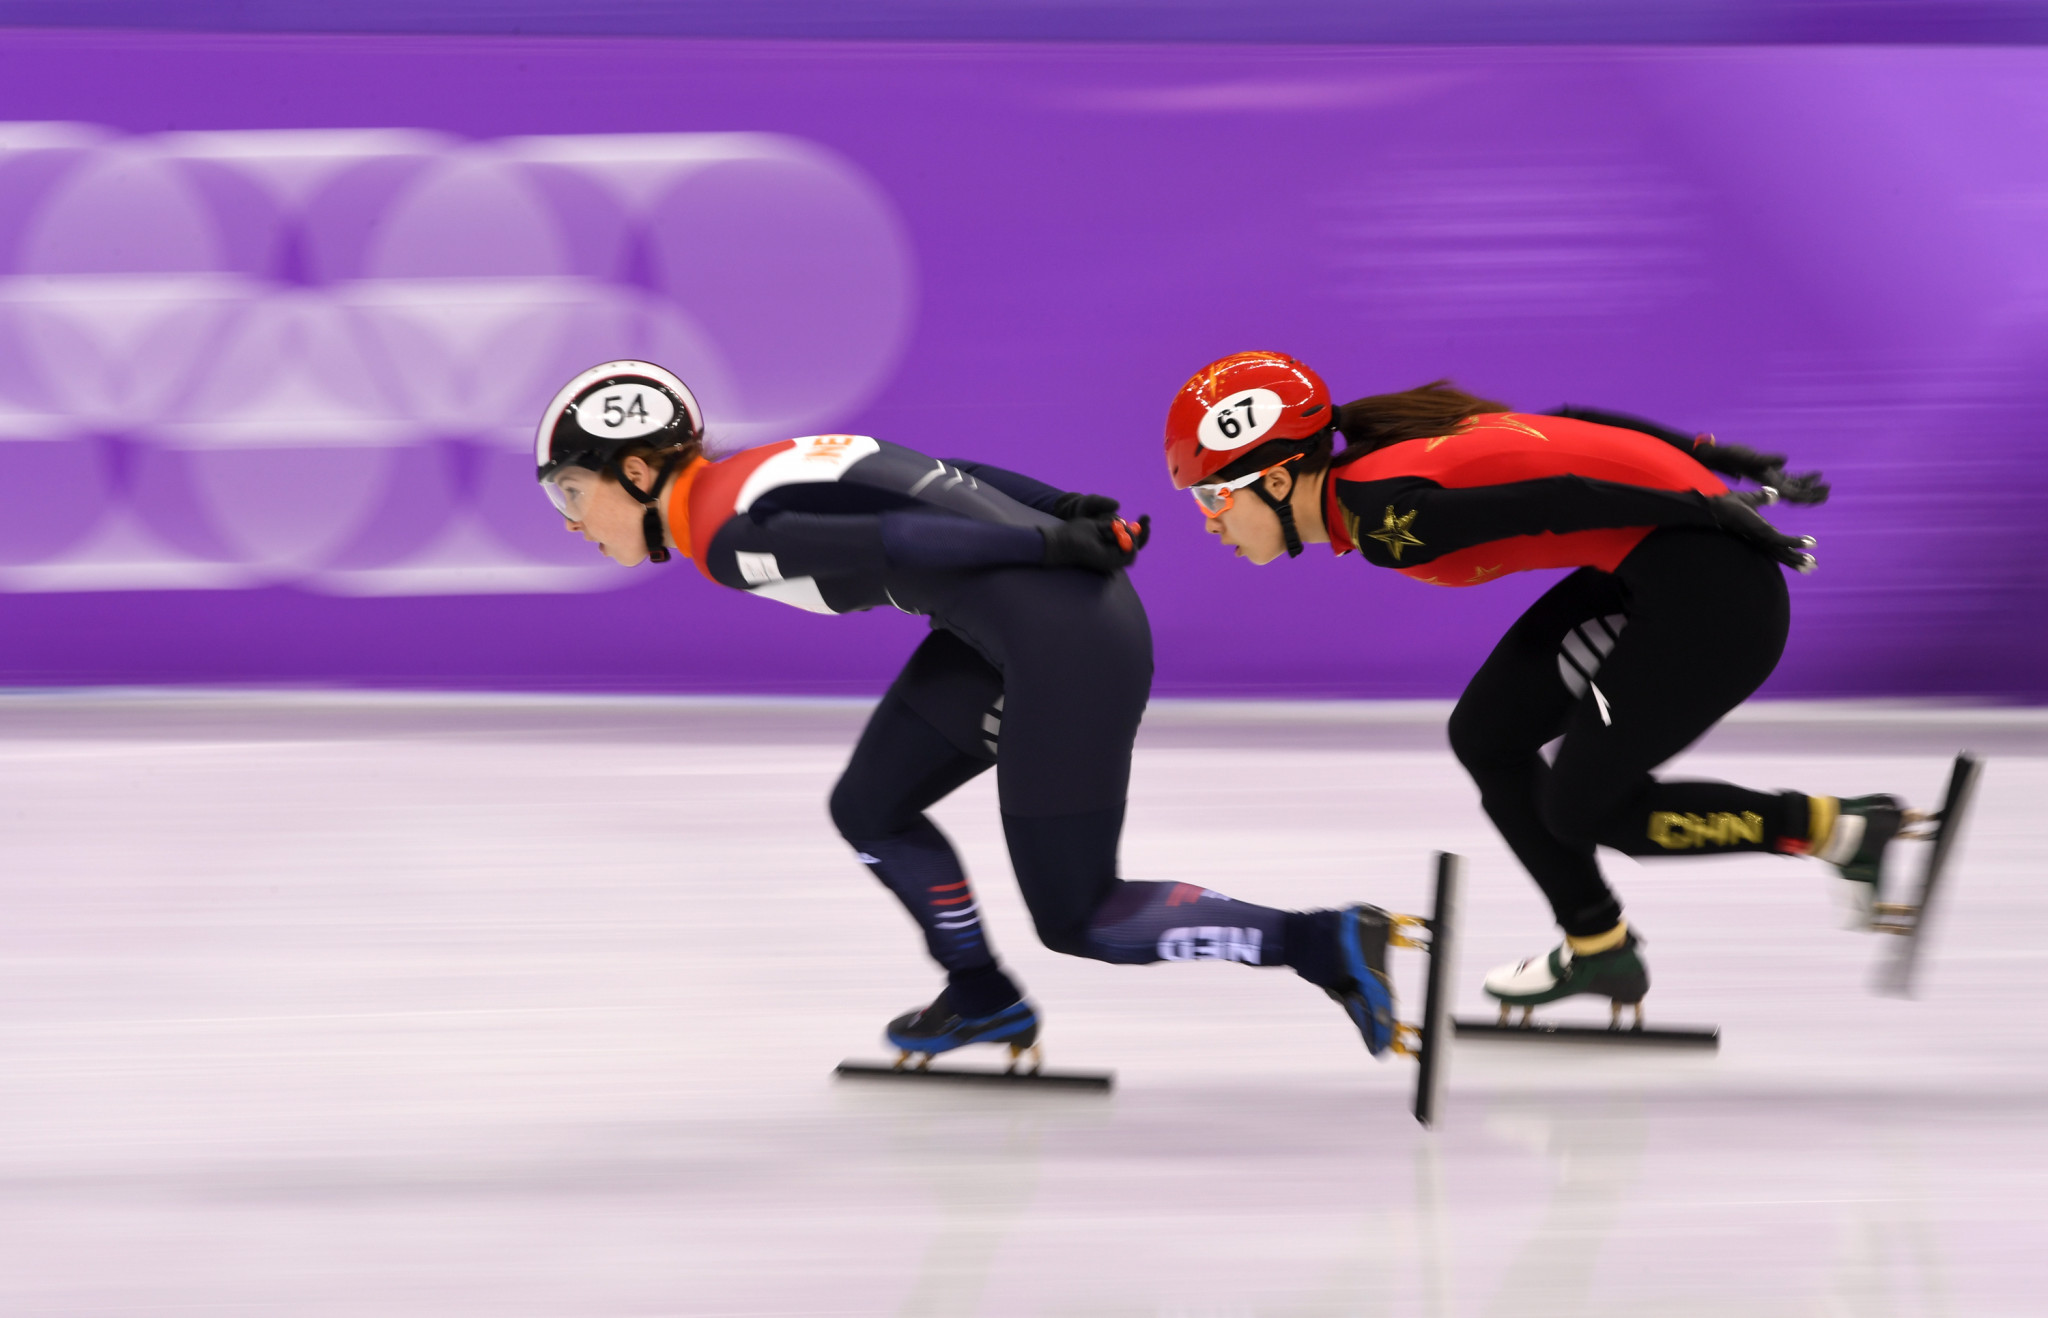 Home star Van Ruijven shines in women's 500m heats at ISU Short Track Speed Skating World Cup finale